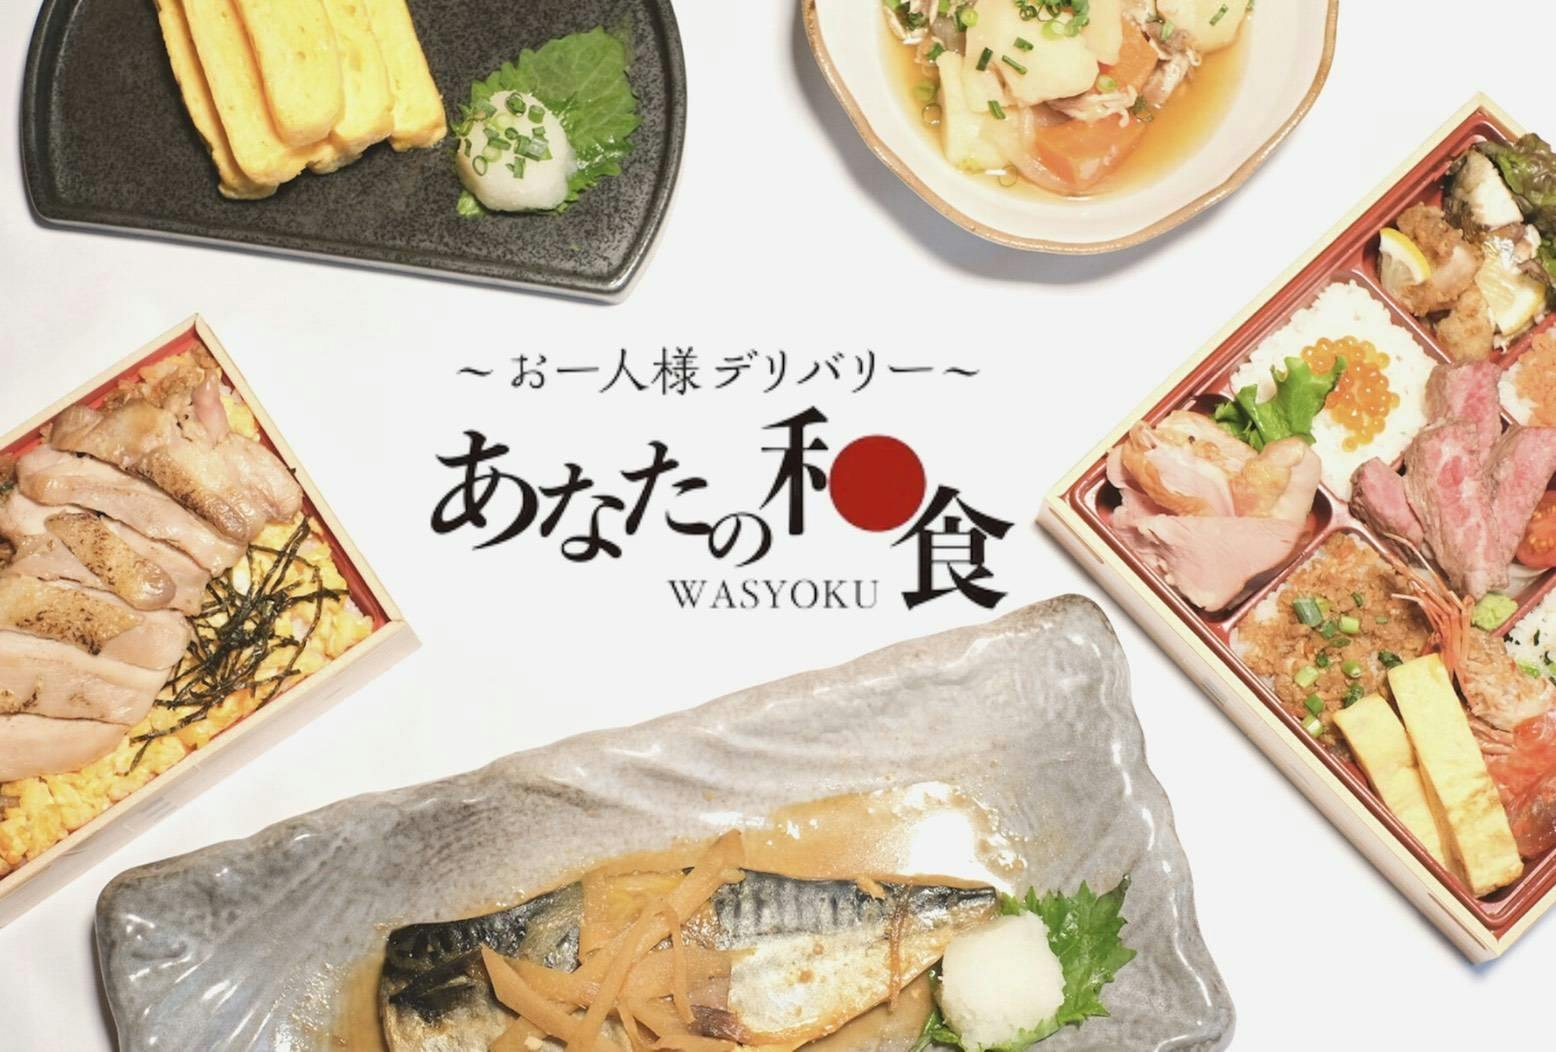 あなたの和食 Your Japanese foodのブランド画像